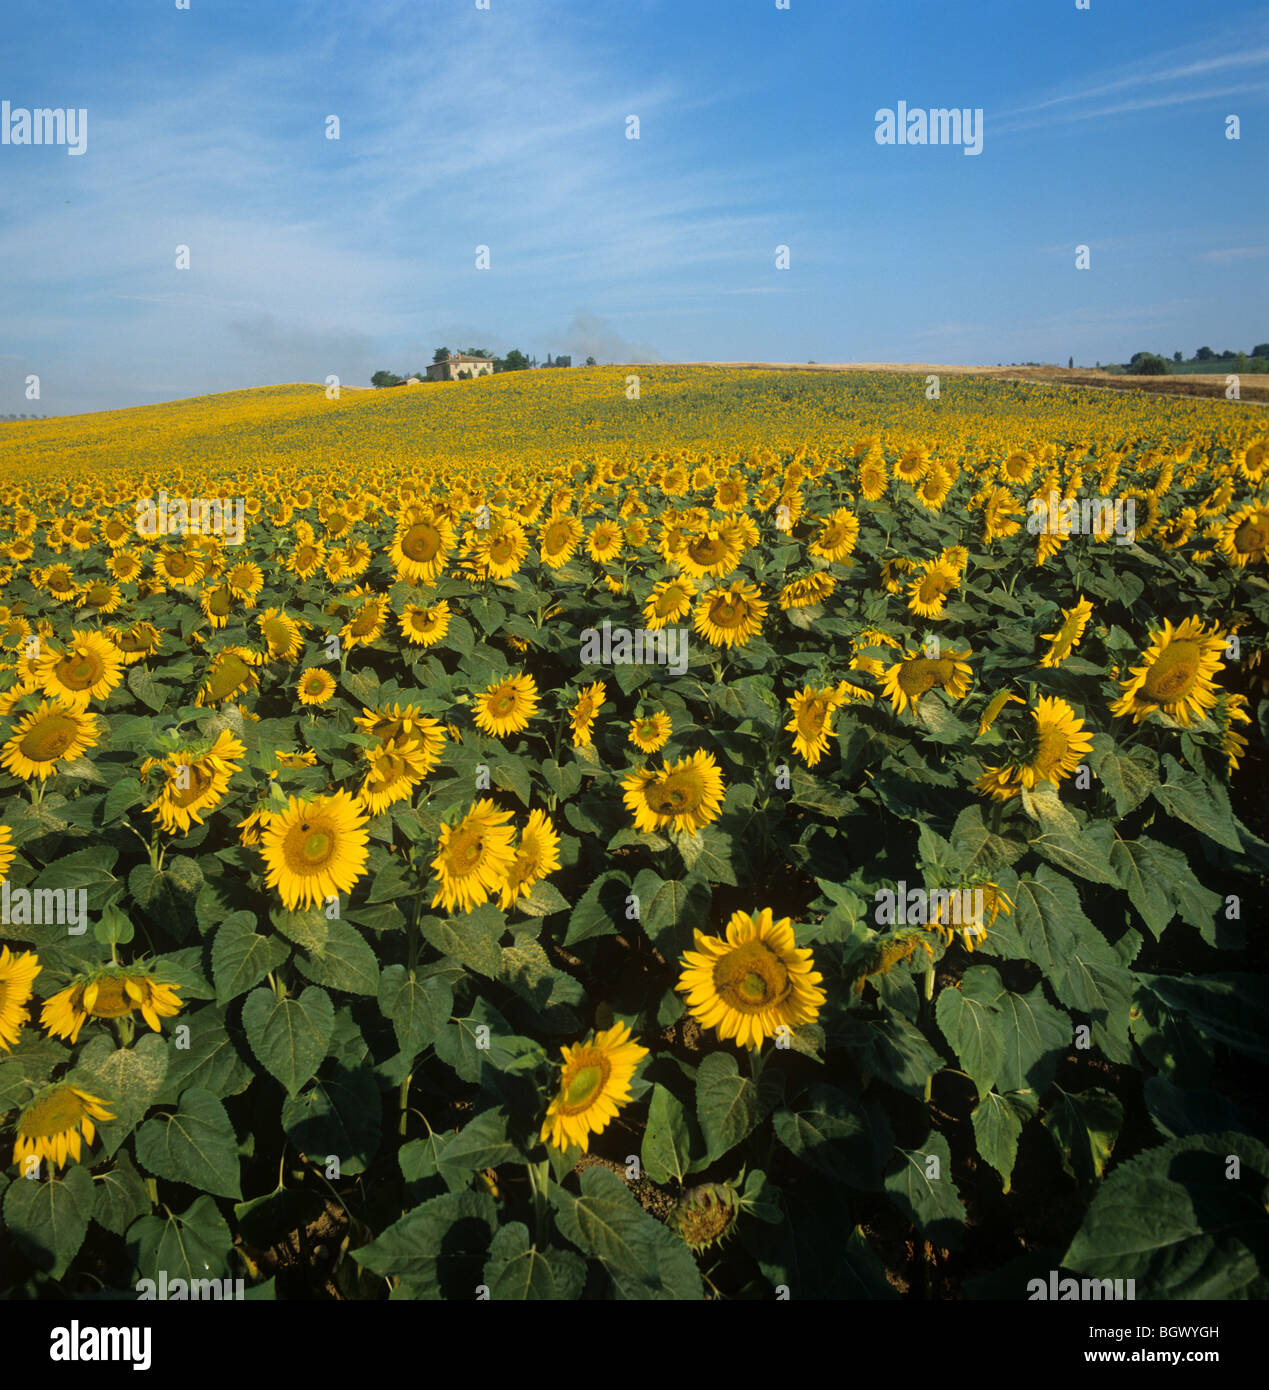 Olio di girasole giallo fiorito in campagna toscana in una mattinata estiva luminosa con cielo blu Foto Stock